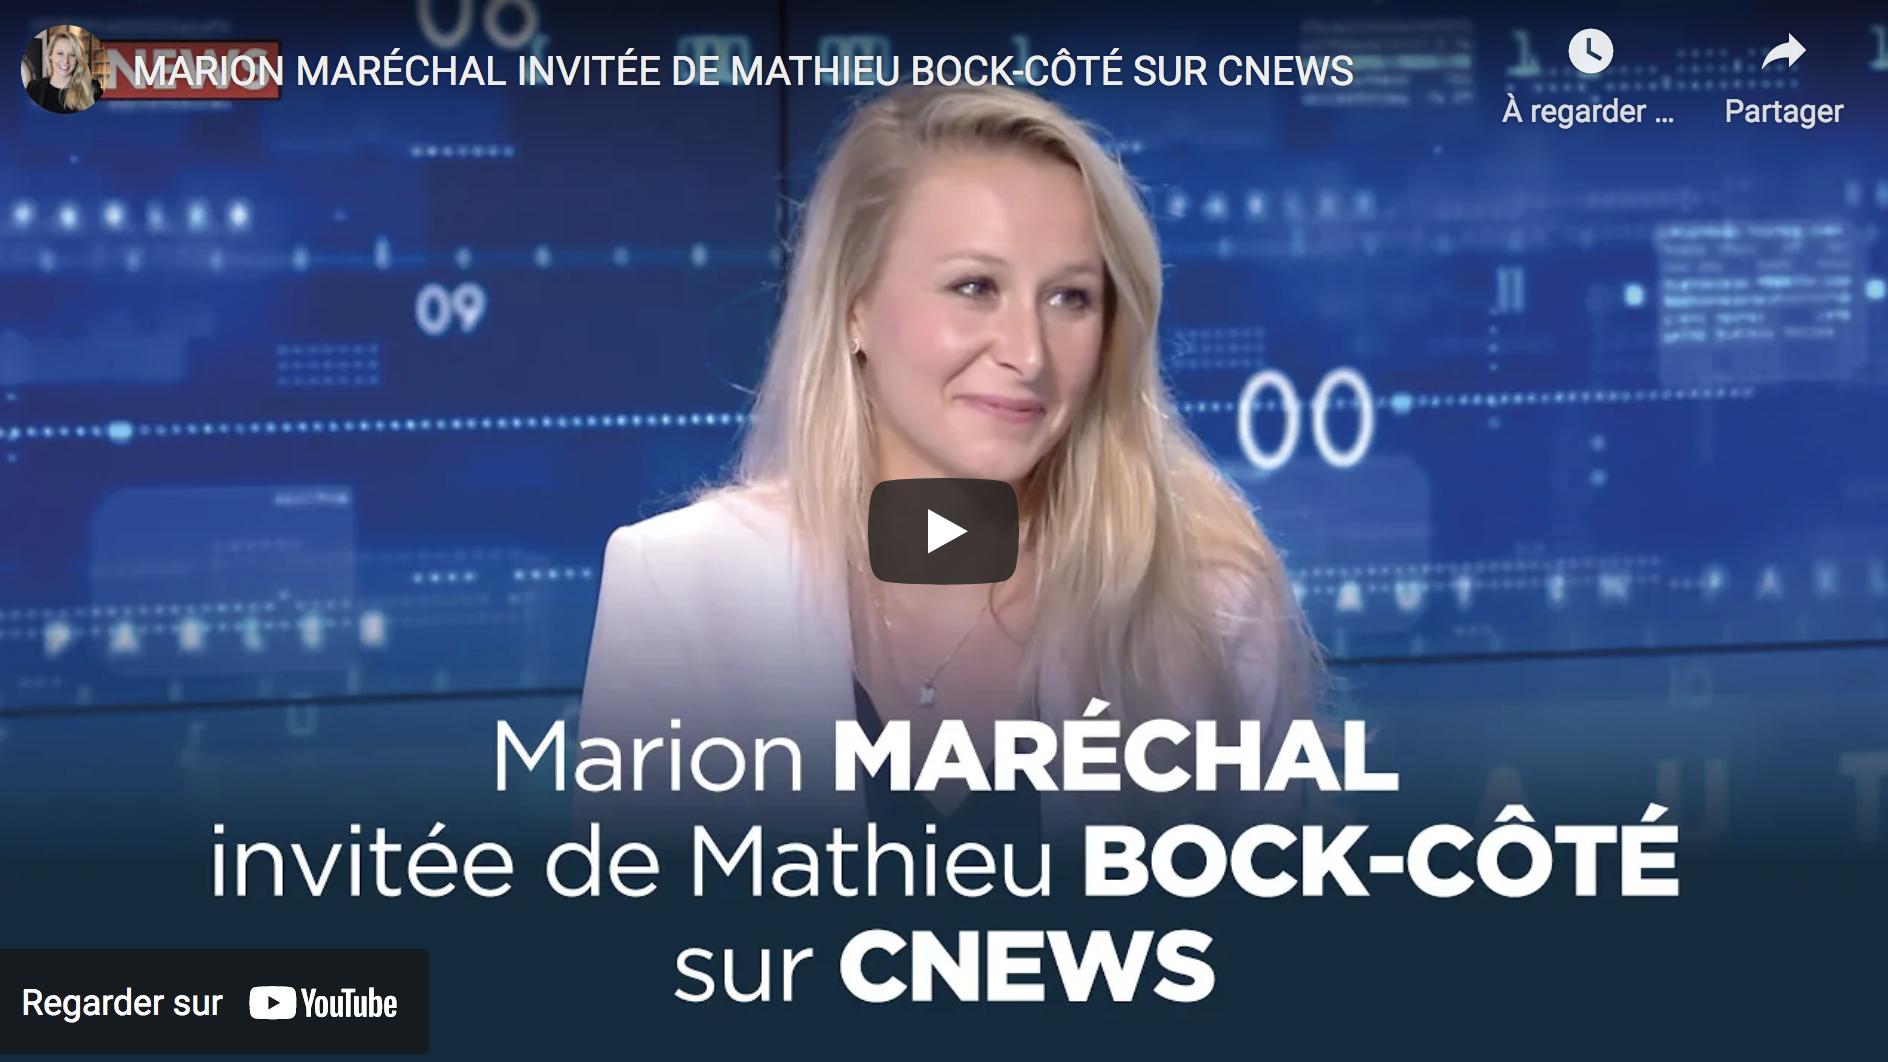 Marion Maréchal invitée de Mathieu Bock-Côté (VIDÉO)